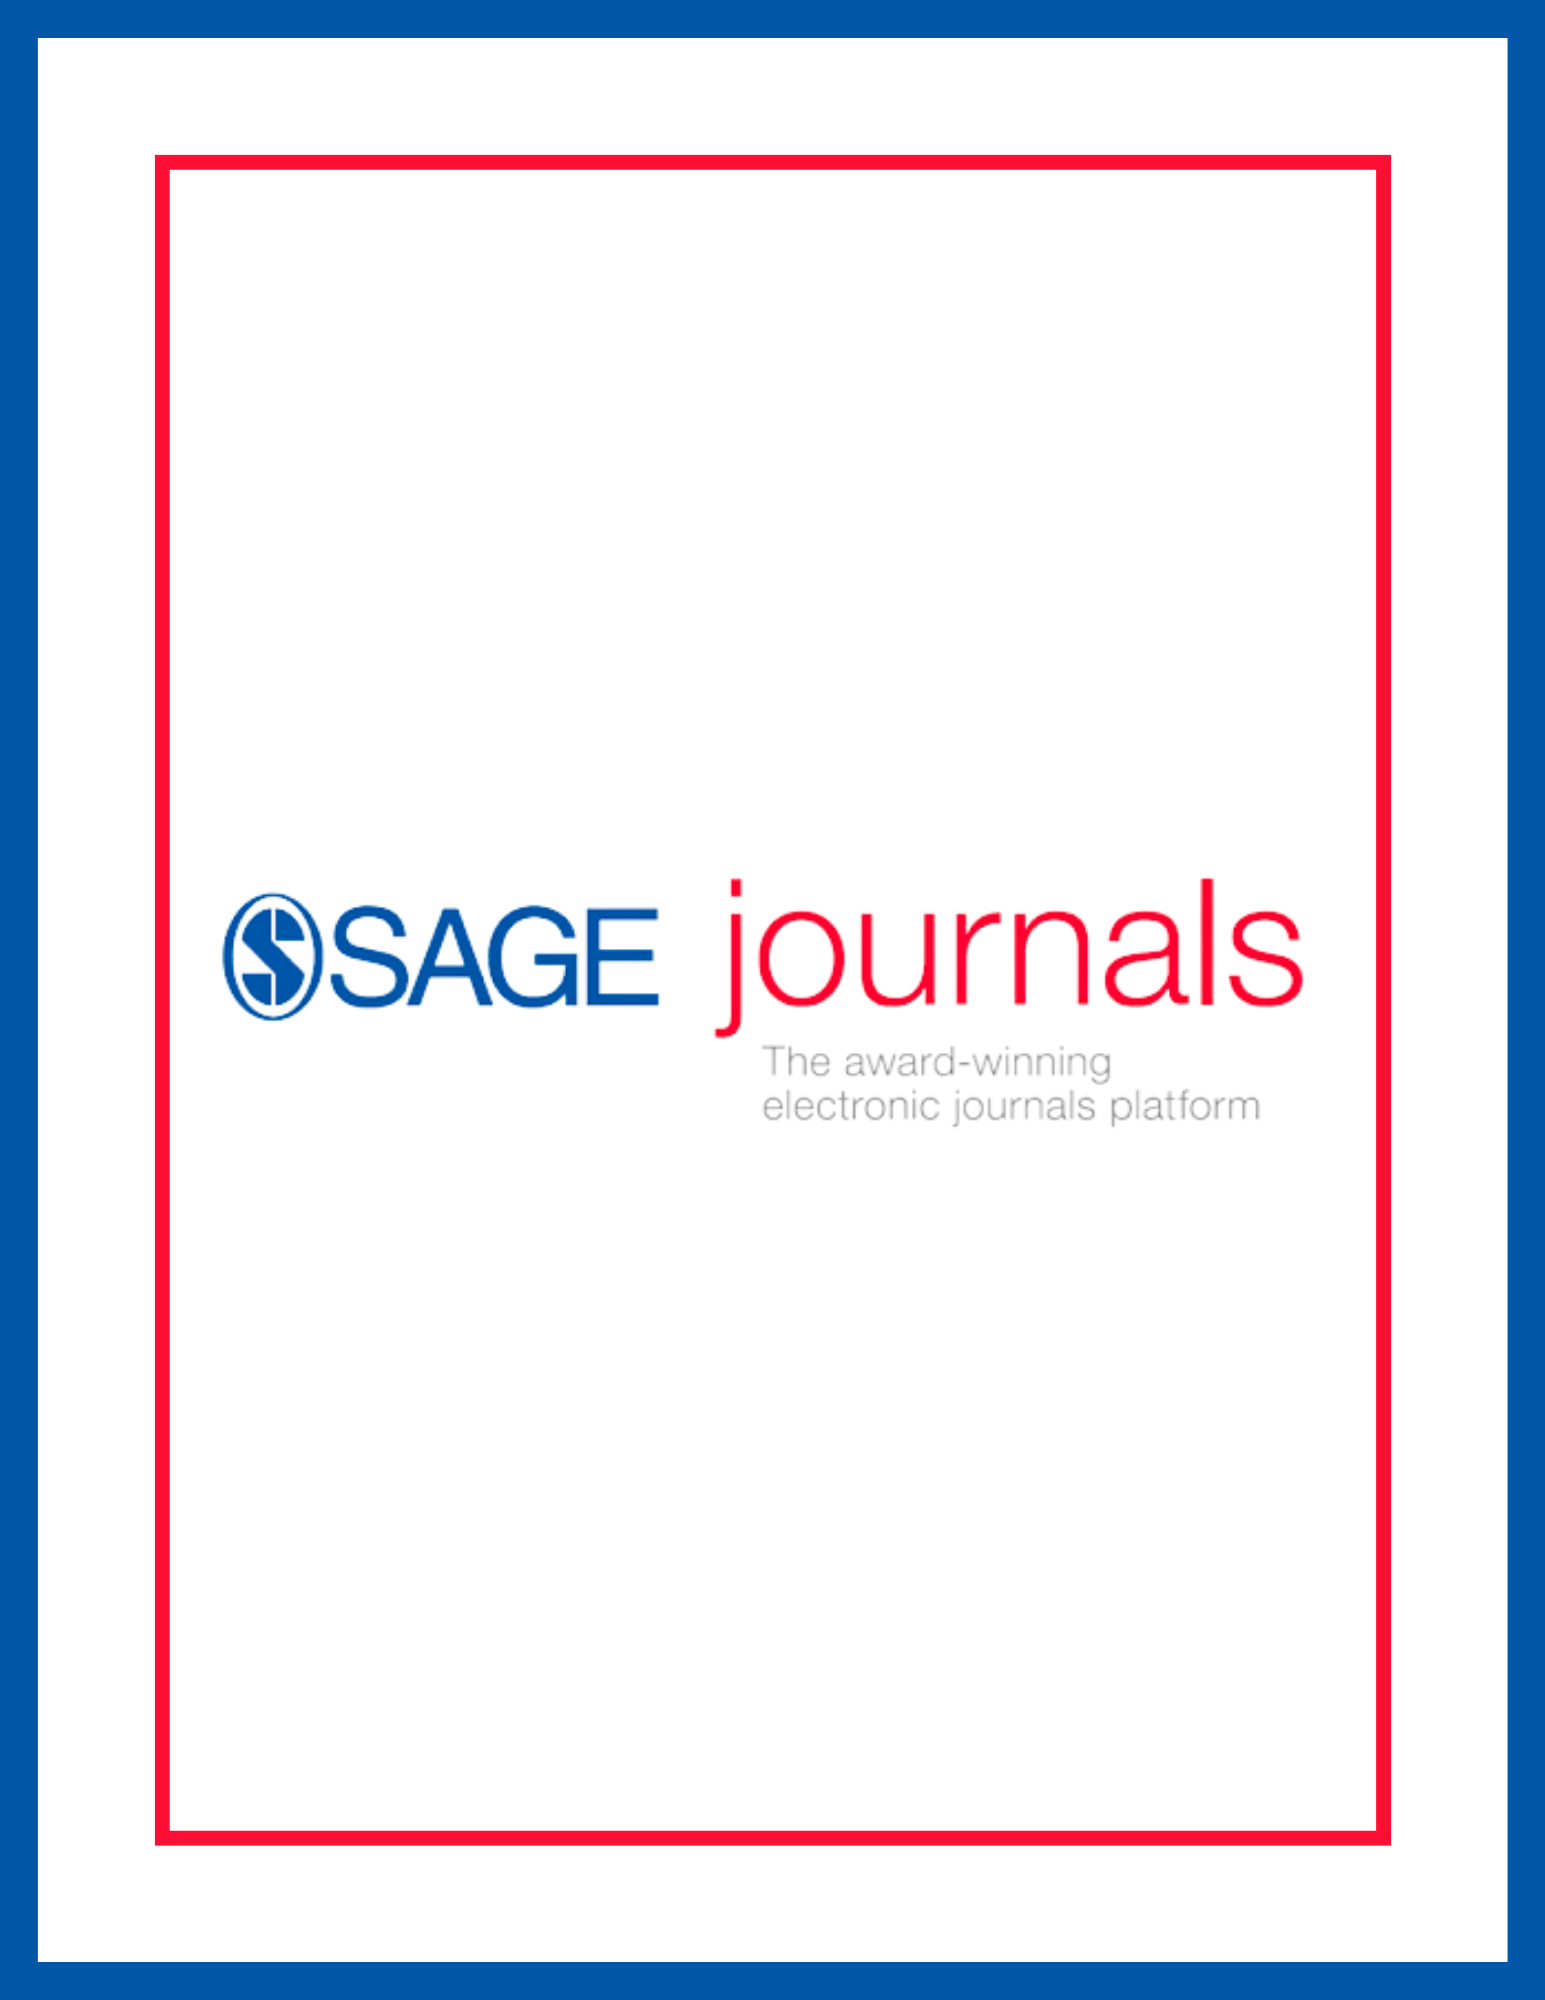 Sage journals